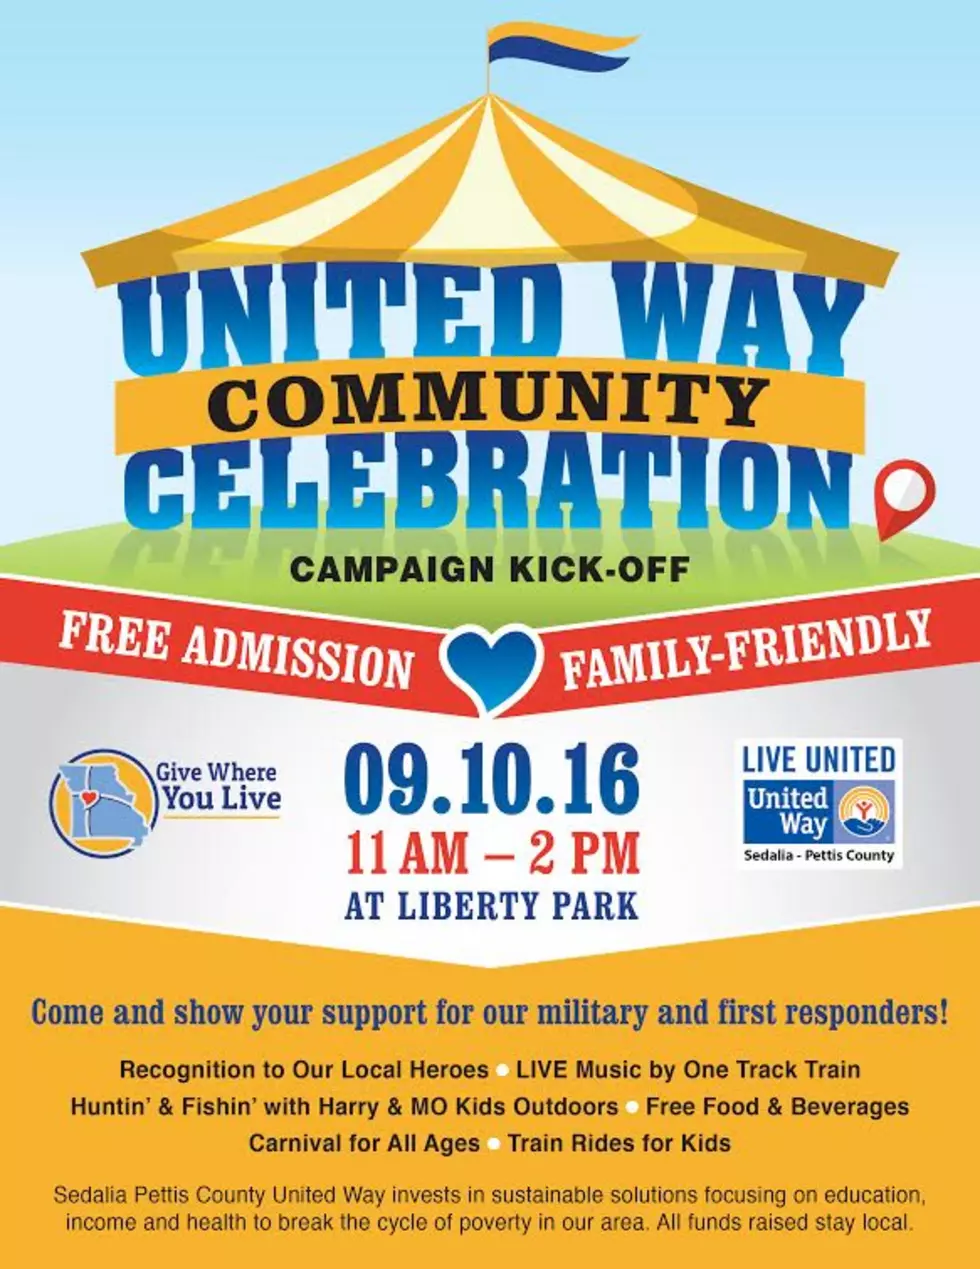 United Way Community Celebration